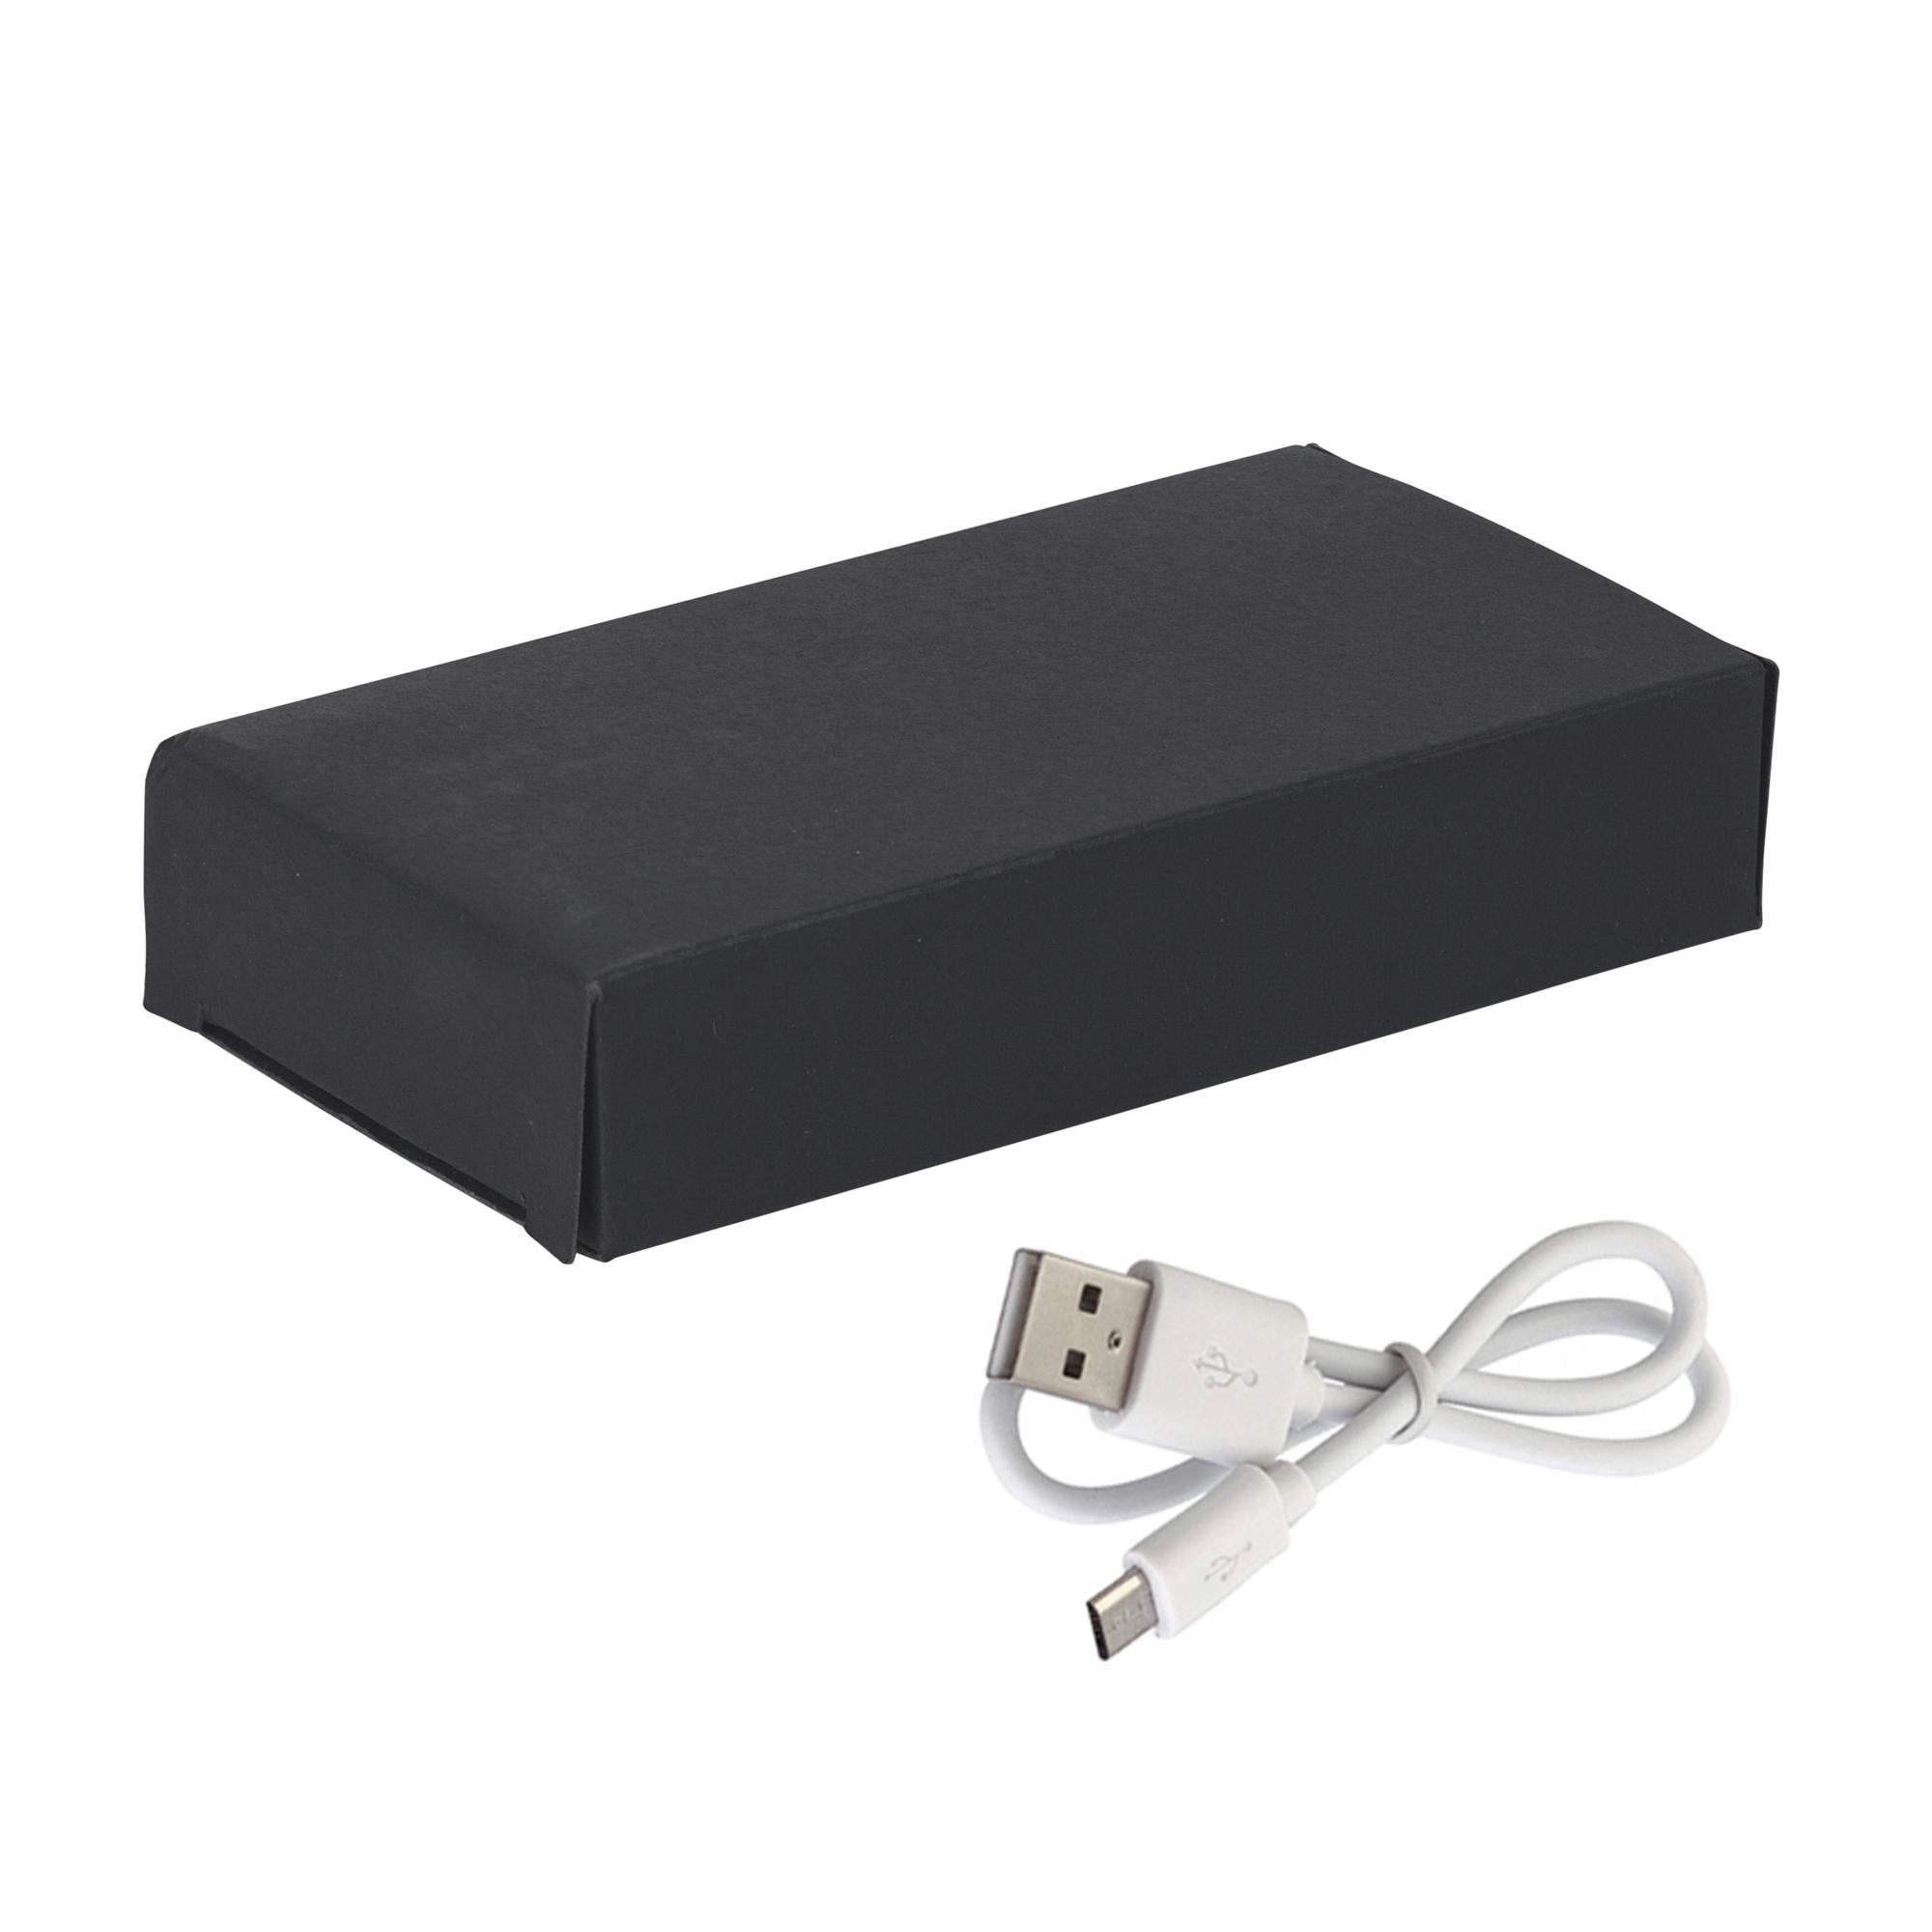 Зарядное устройство "Olo", 8000 mAh, шильд в покрытии soft touch, цвет черный, фото 4